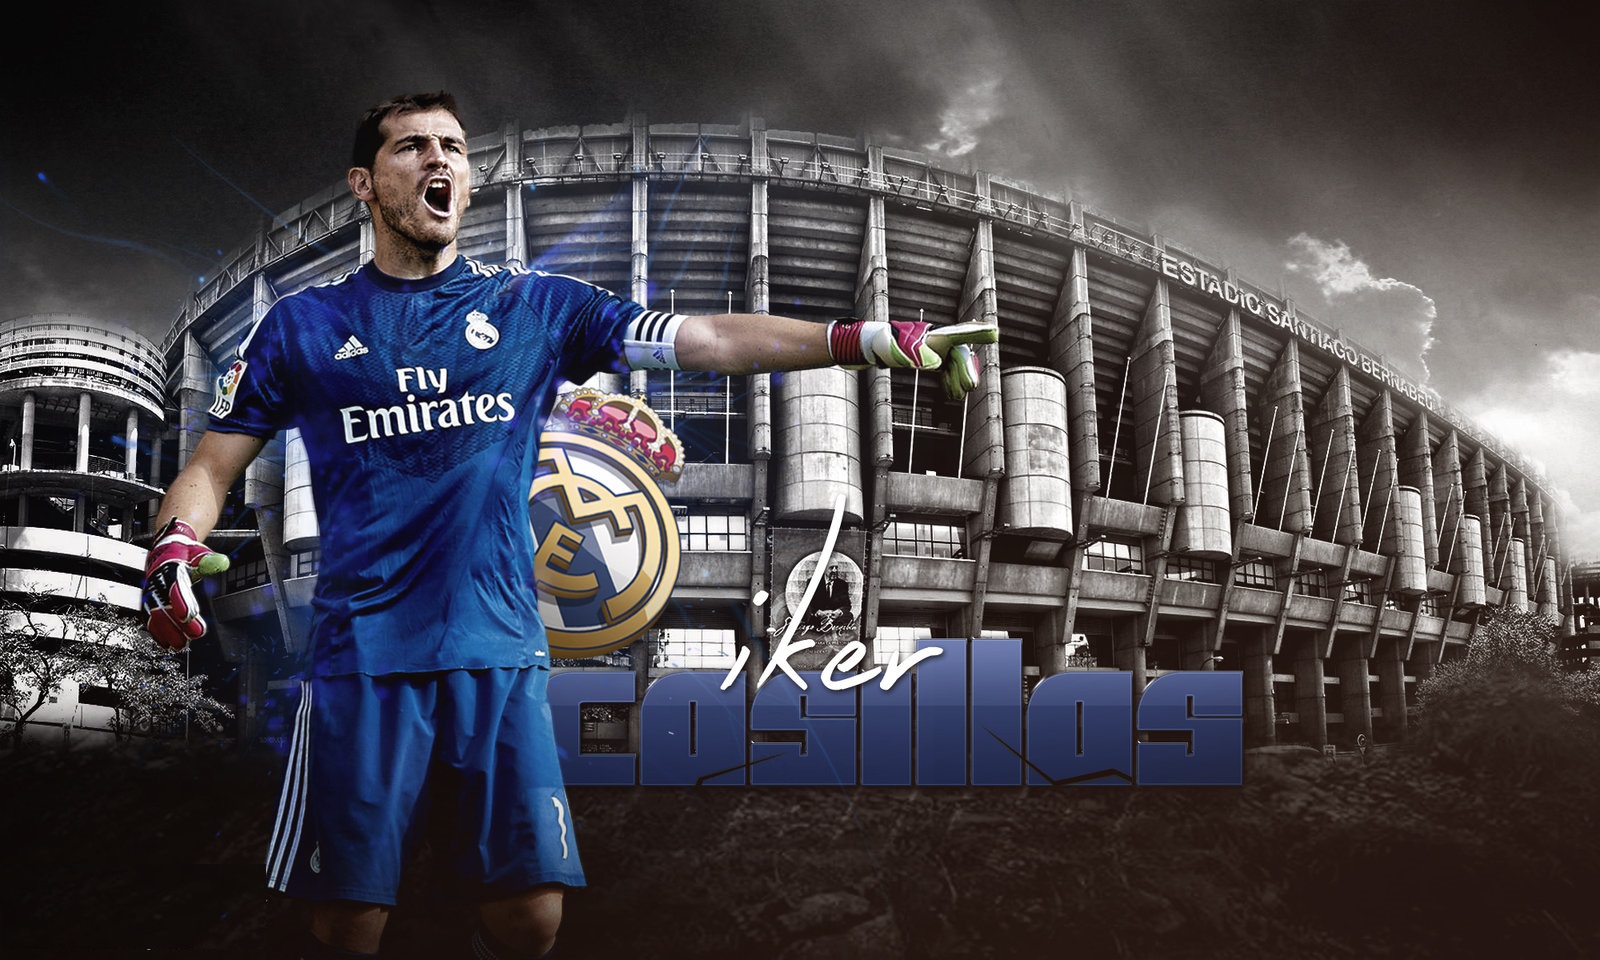 Iker Casillas HD Wallpaper New Image